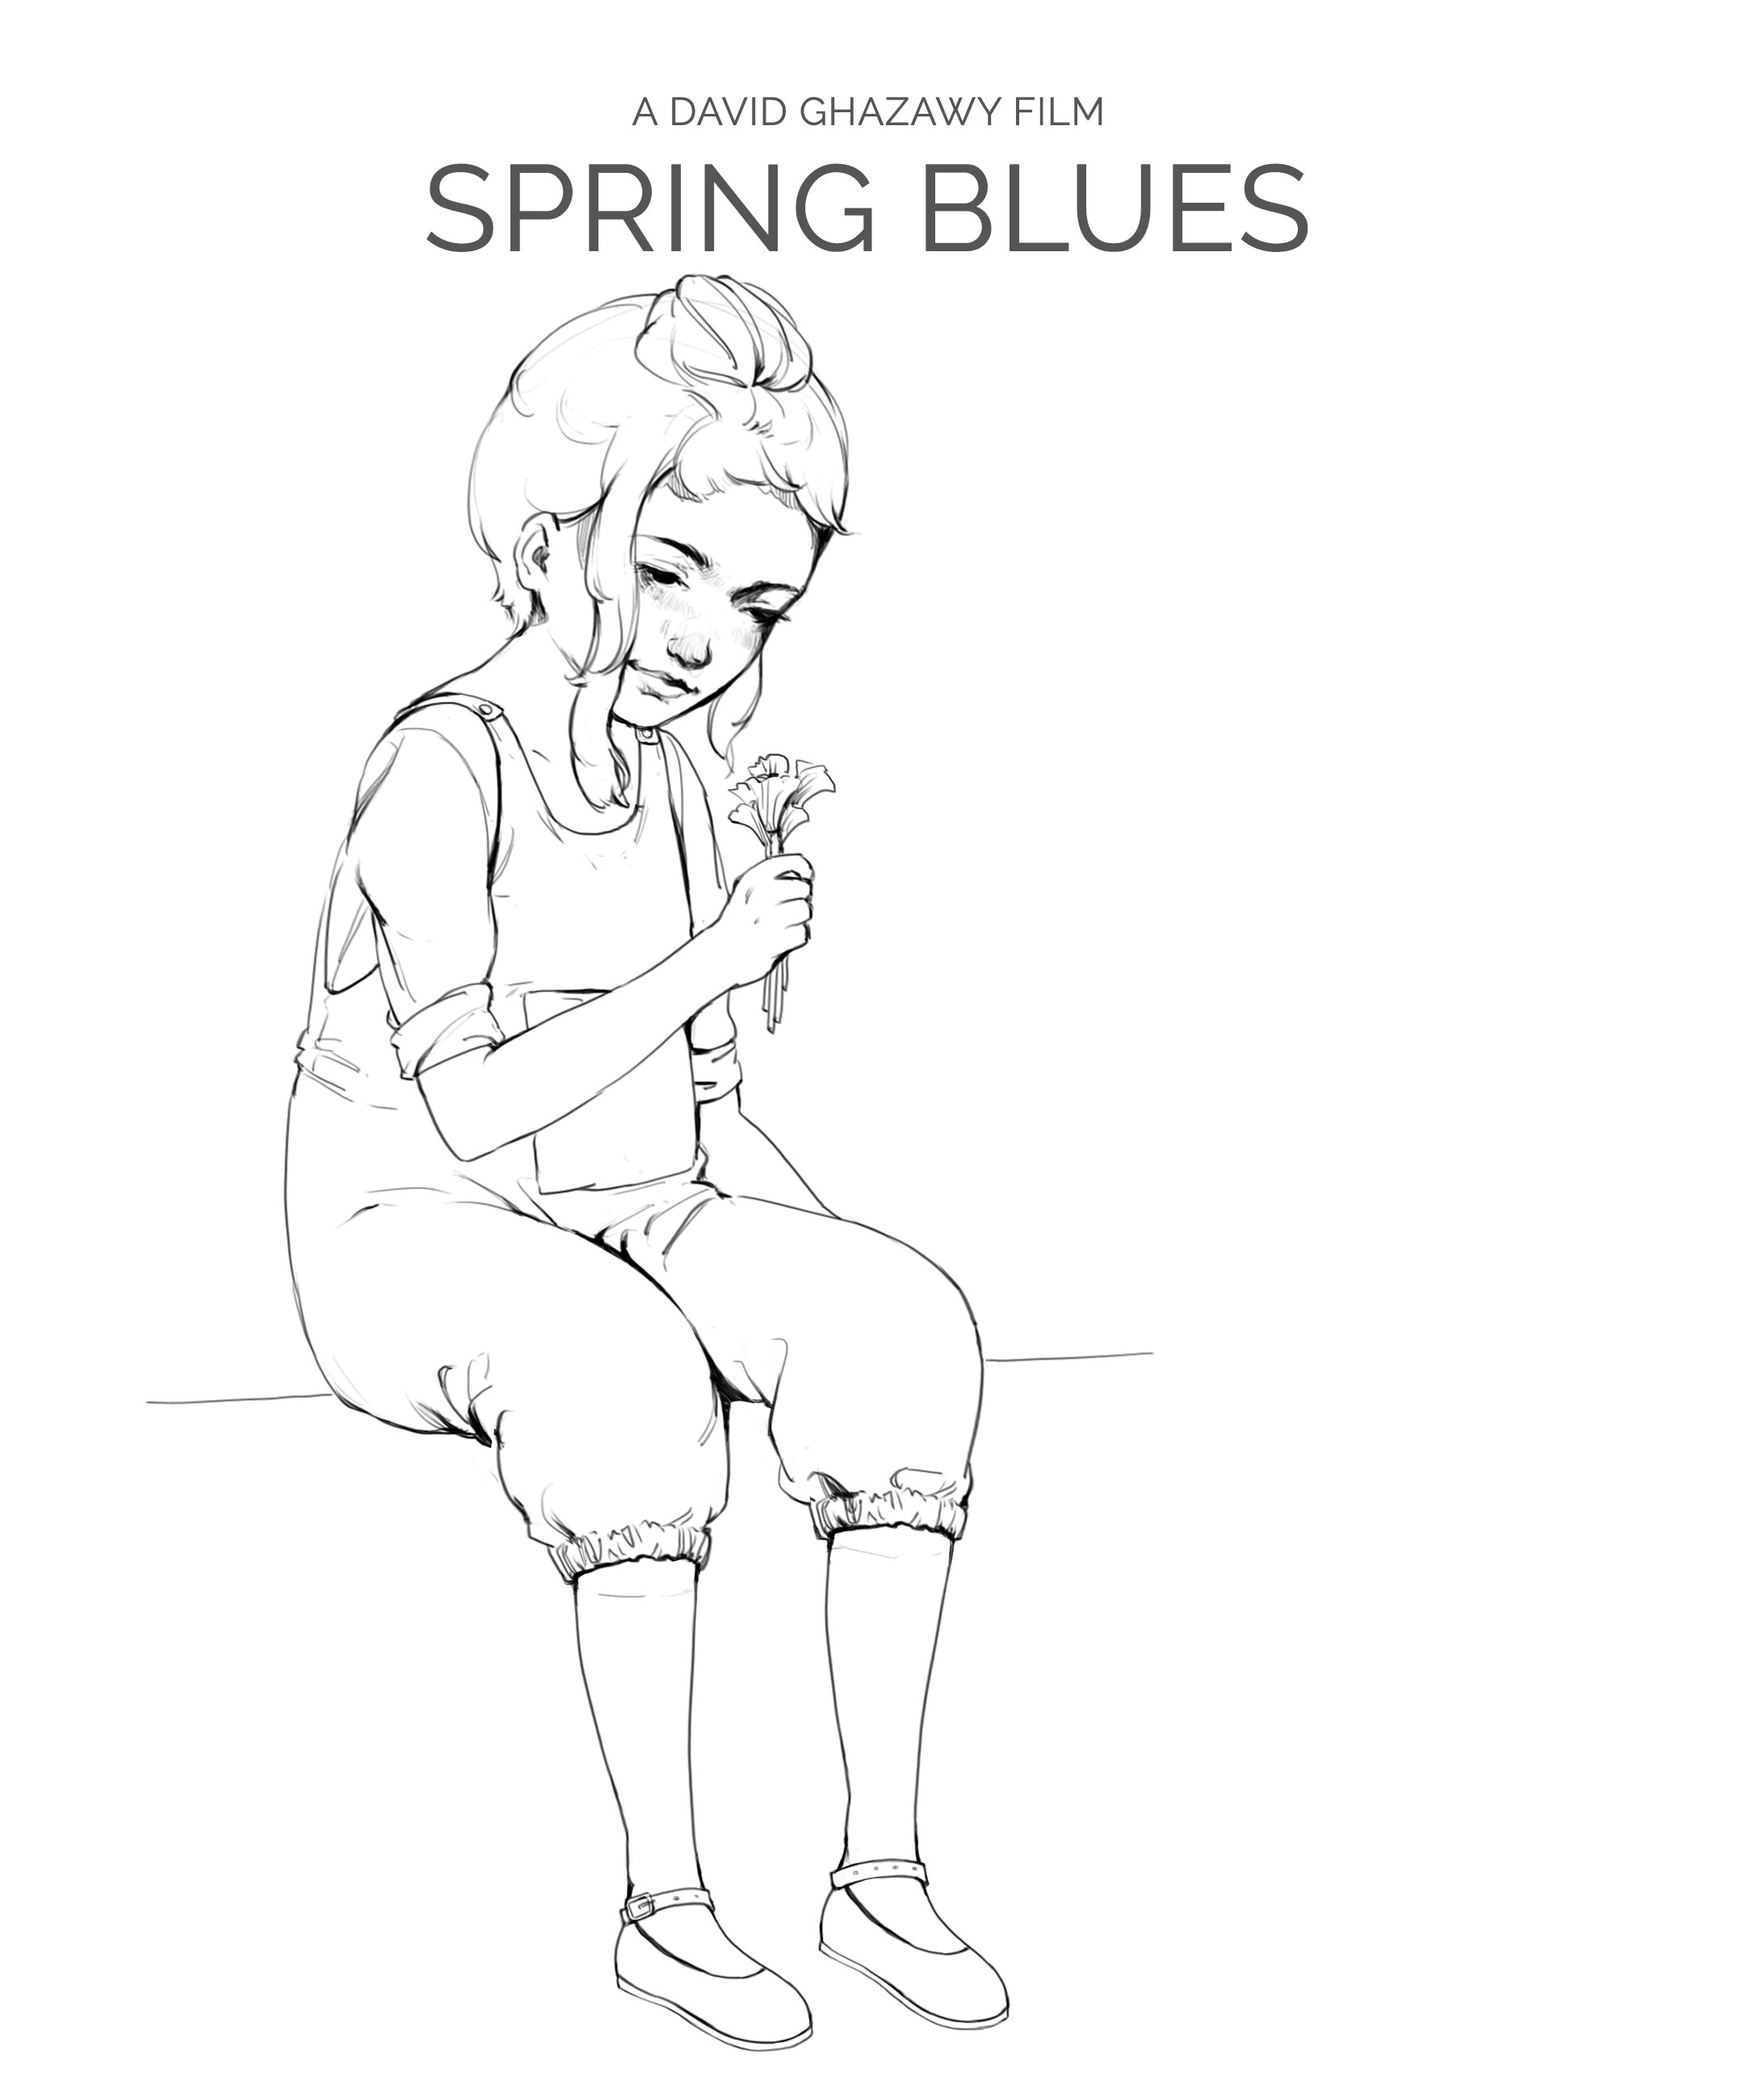 Spring Blues Film: Mischevious Child